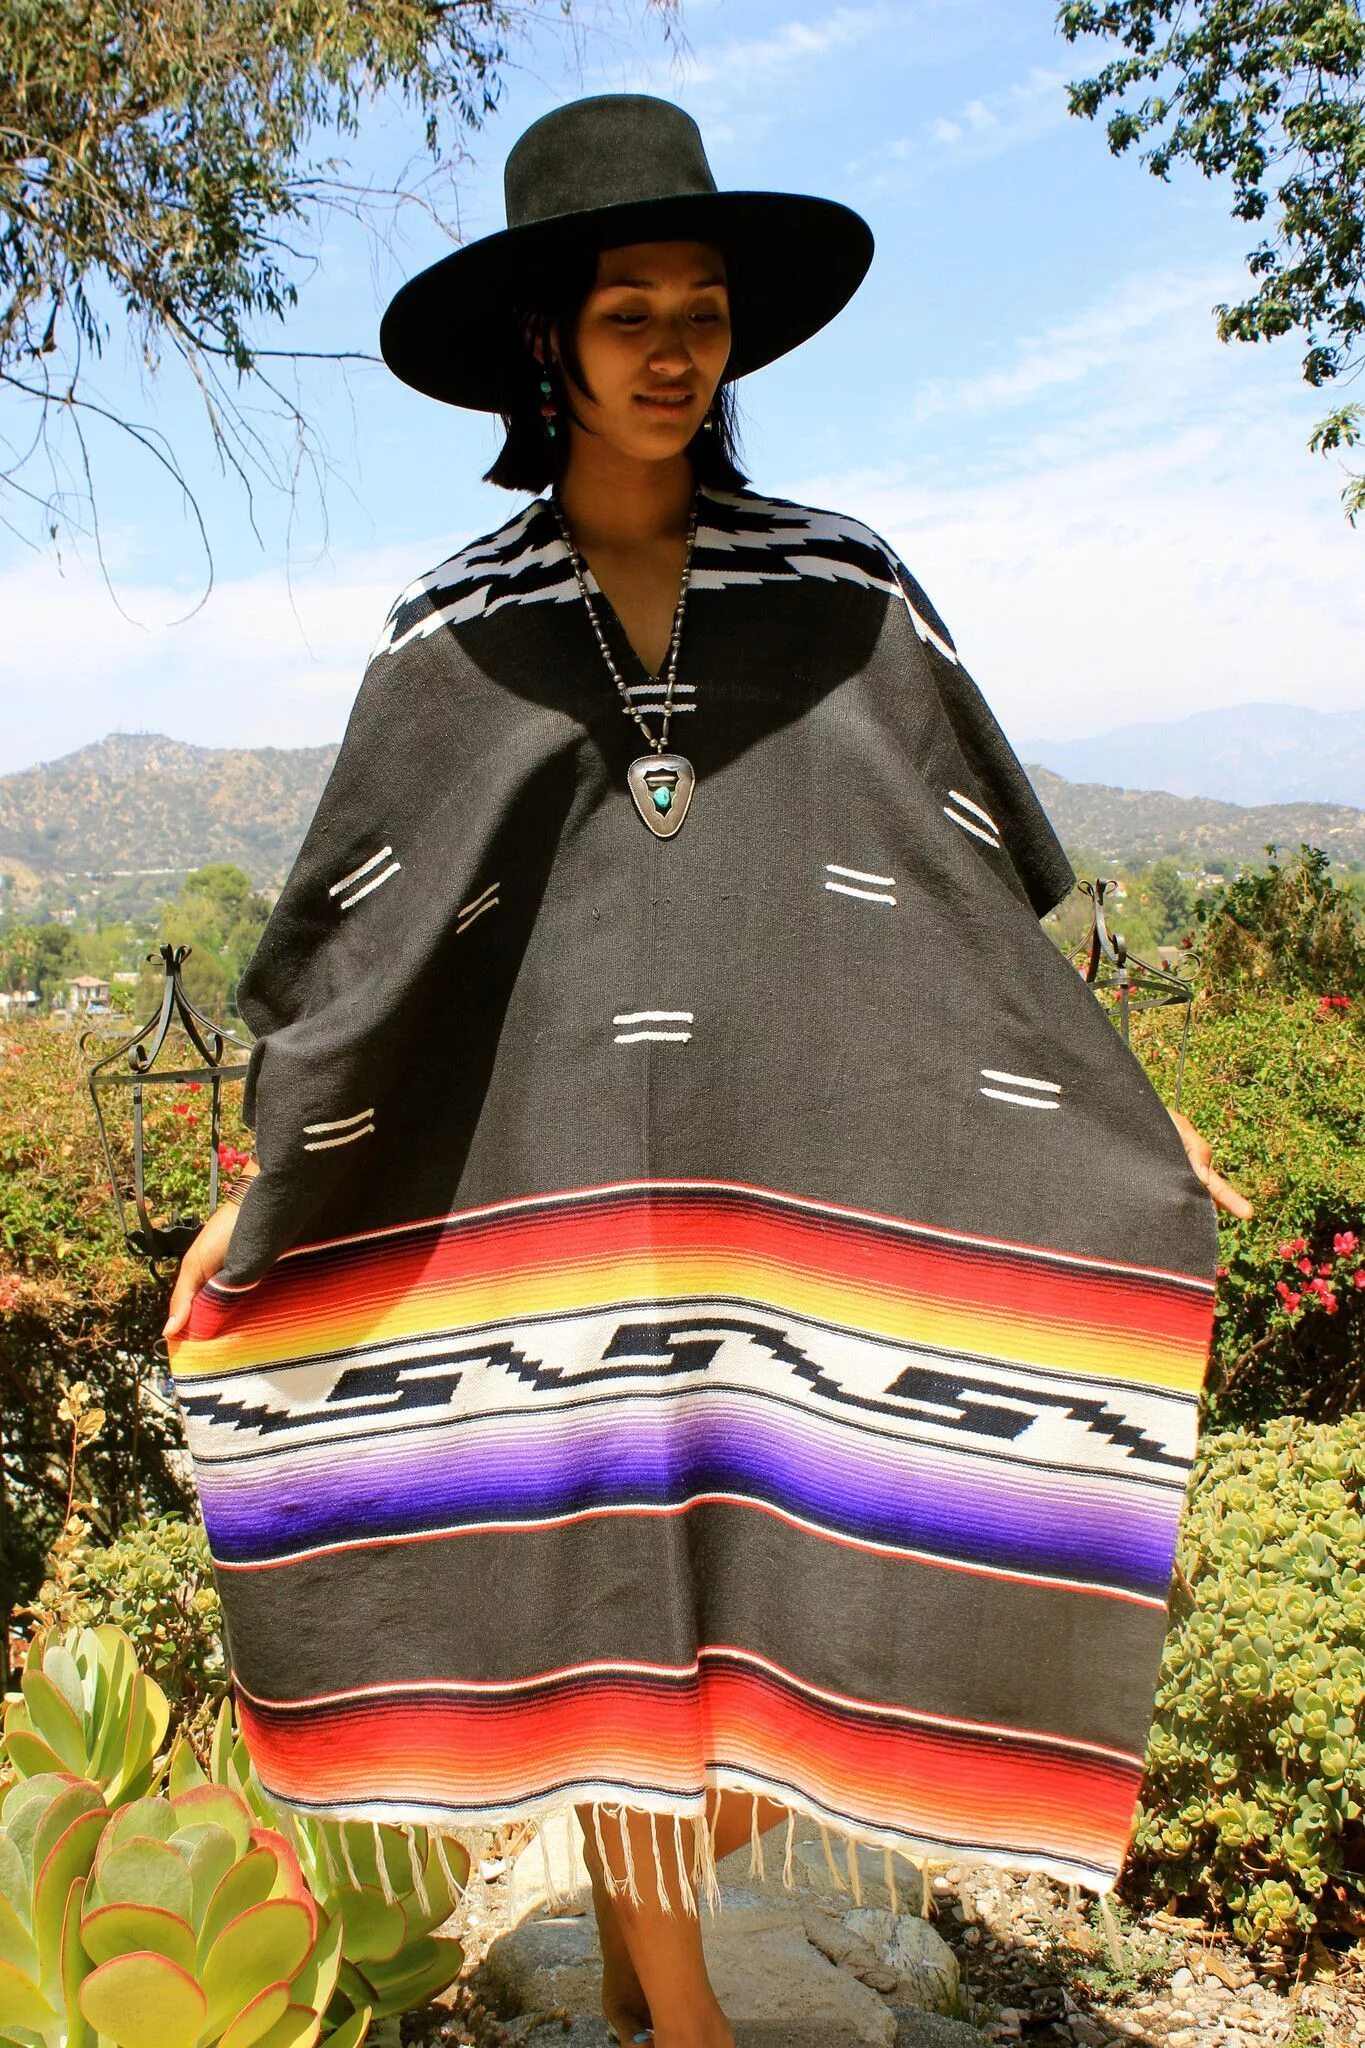 Широкая накидка. Пончо Мехико. Мексика пончо дети. Традиционная одежда Мексики пончо. Пончо женское Мексиканское.